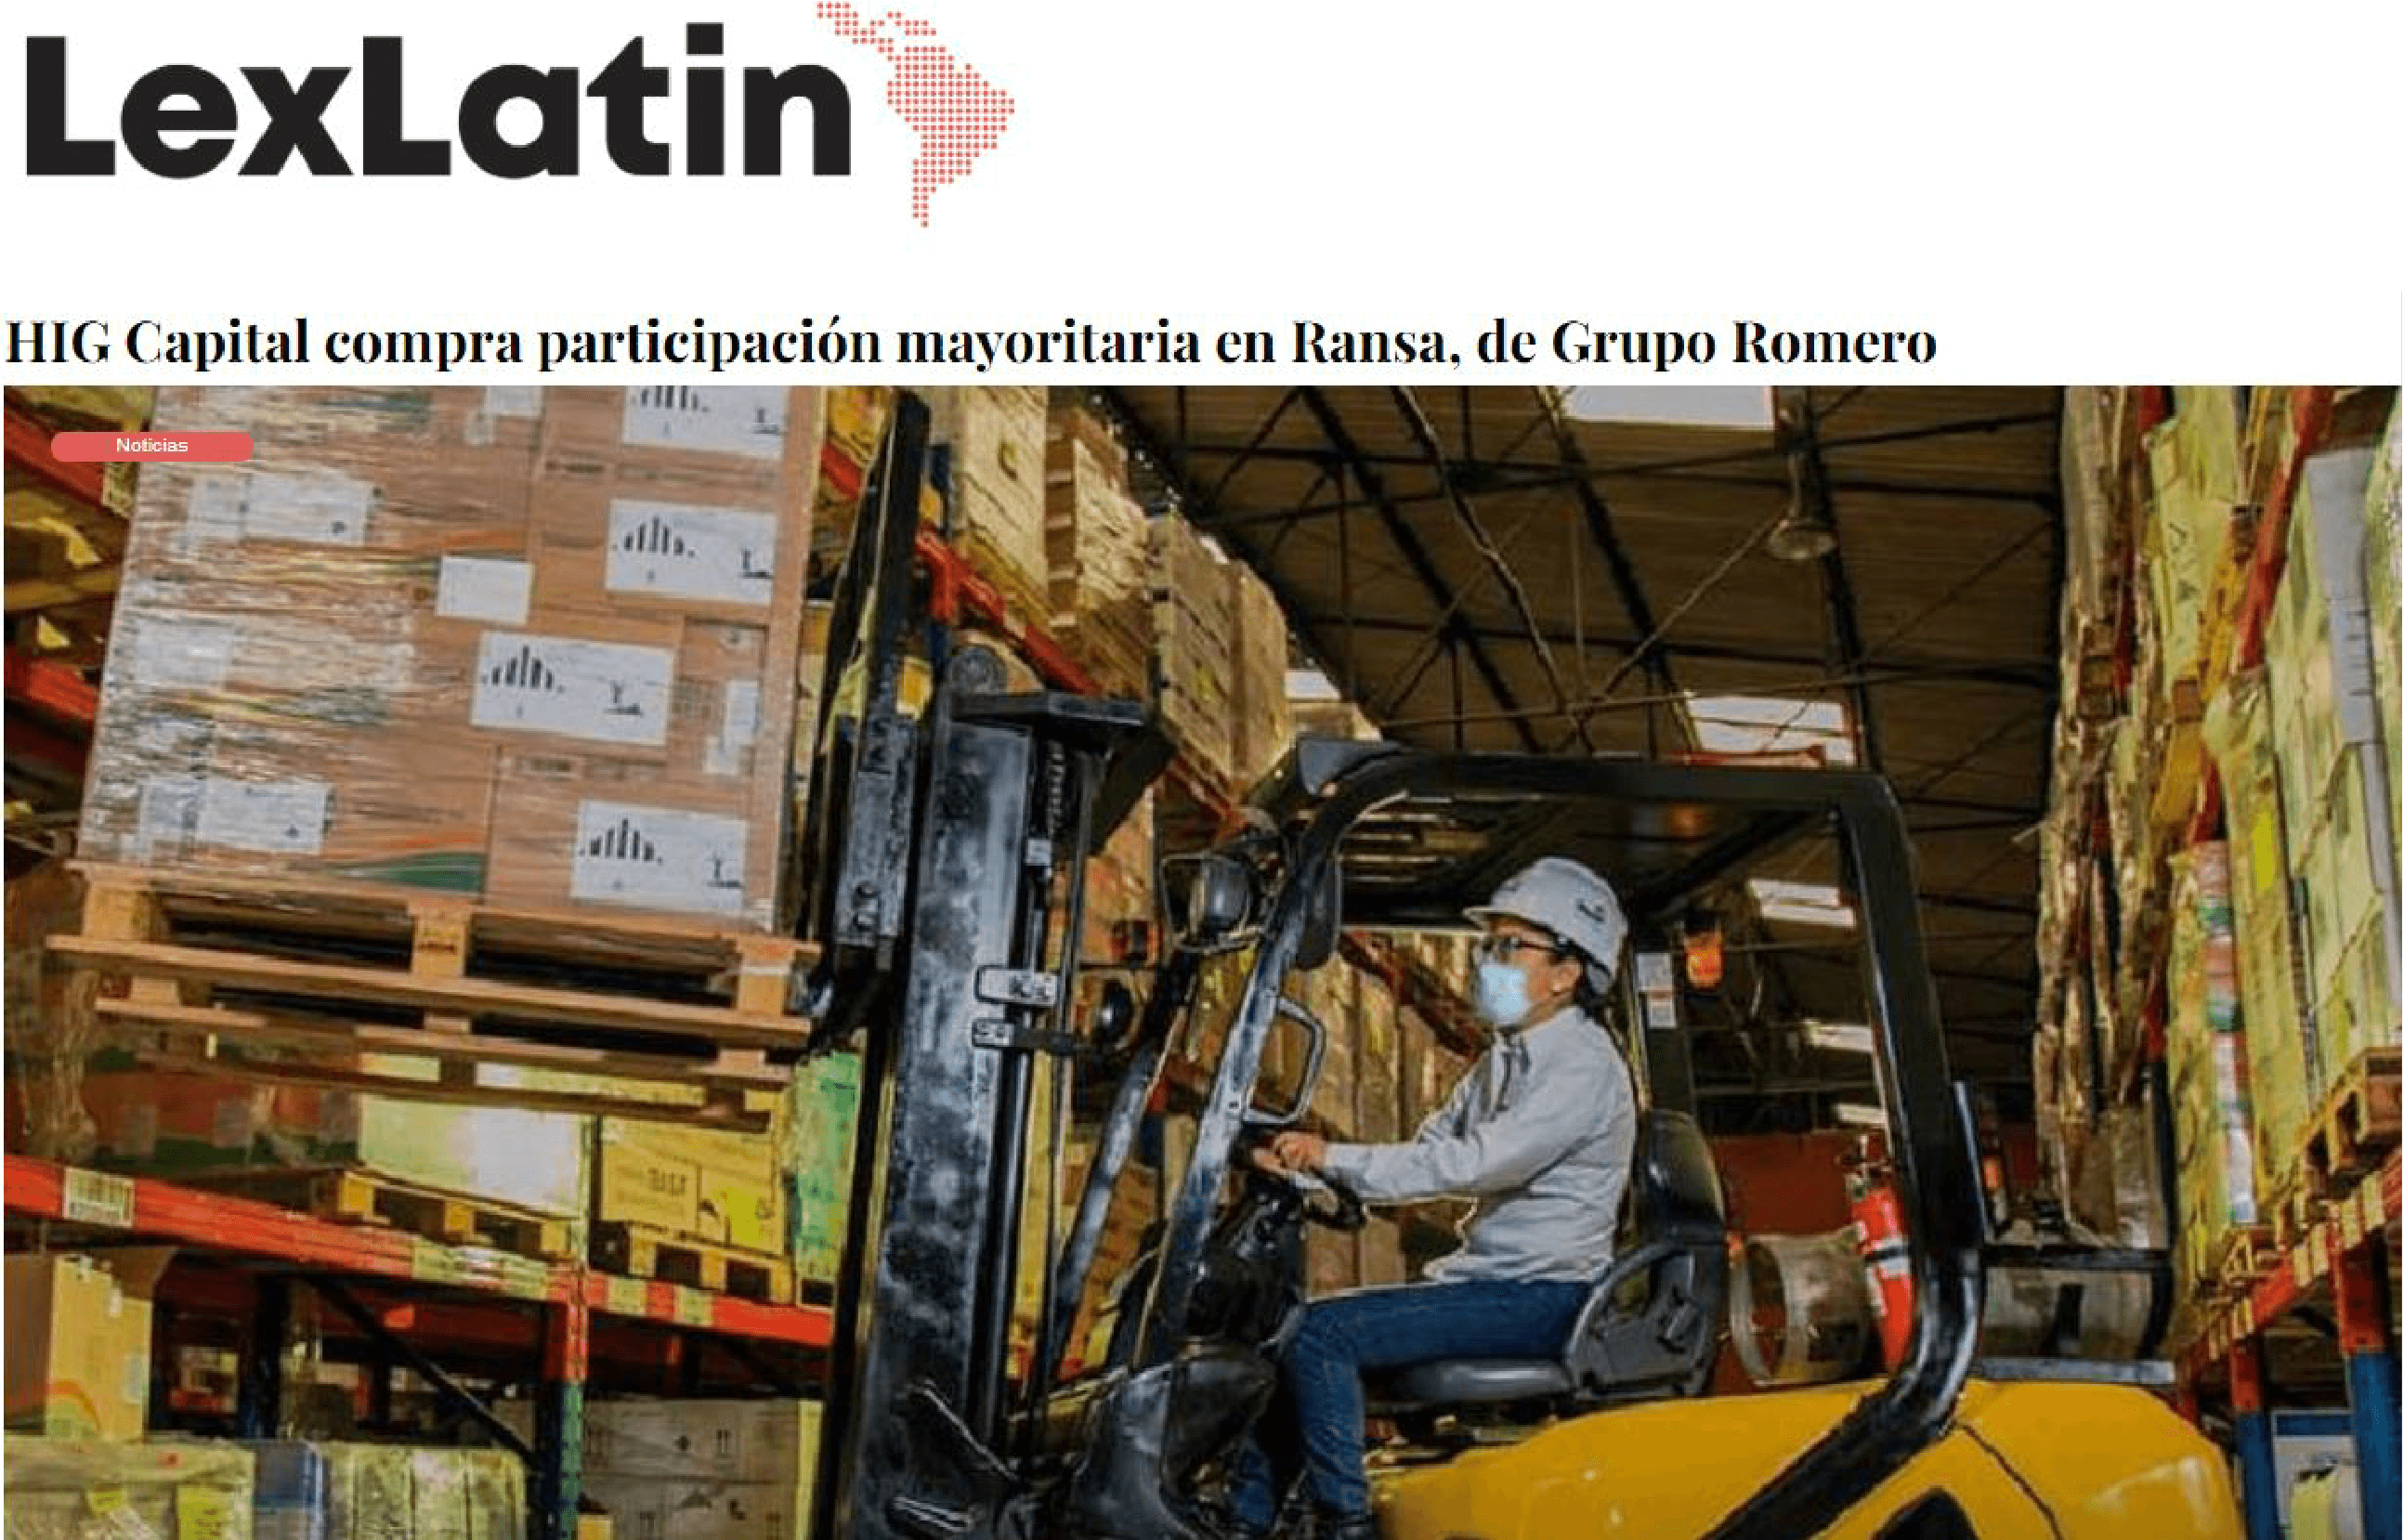 LexLatin – HIG Capital compra participación mayoritaria en Ransa, de Grupo Romero - CorralRosales - Abogados Ecuador